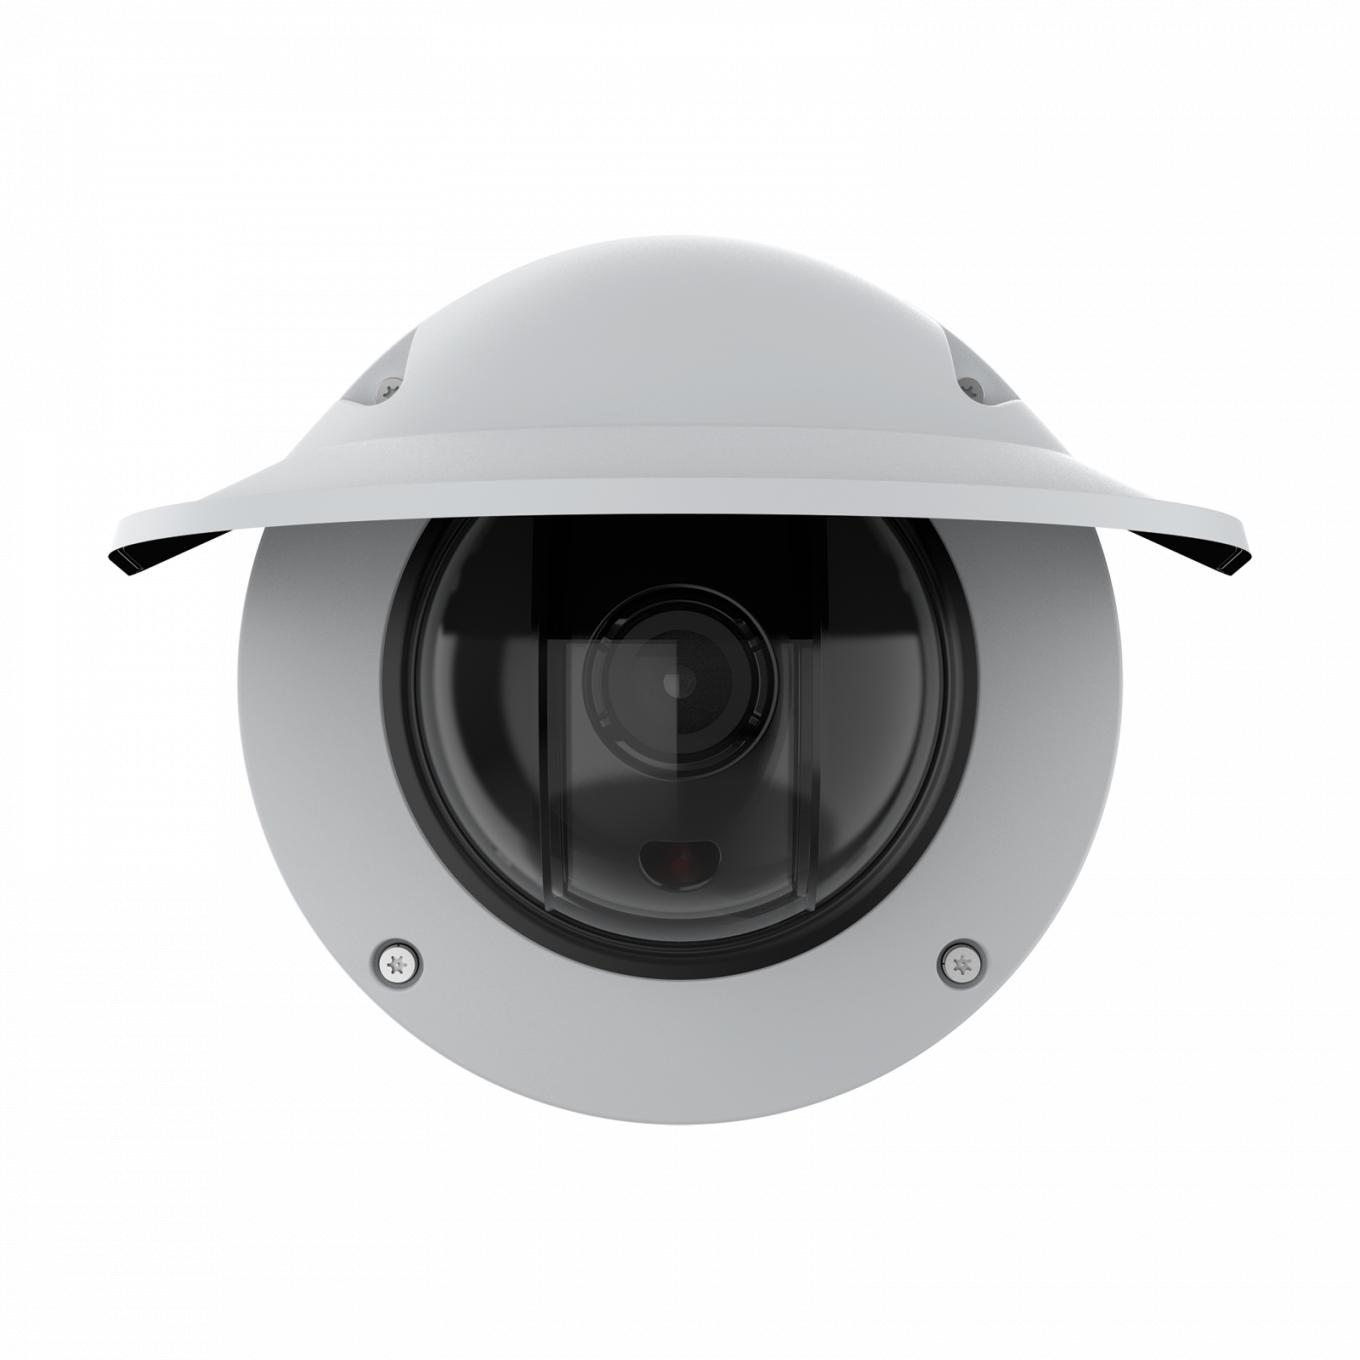 Купольная камера AXIS Q3538-LVE Dome Camera, вид спереди